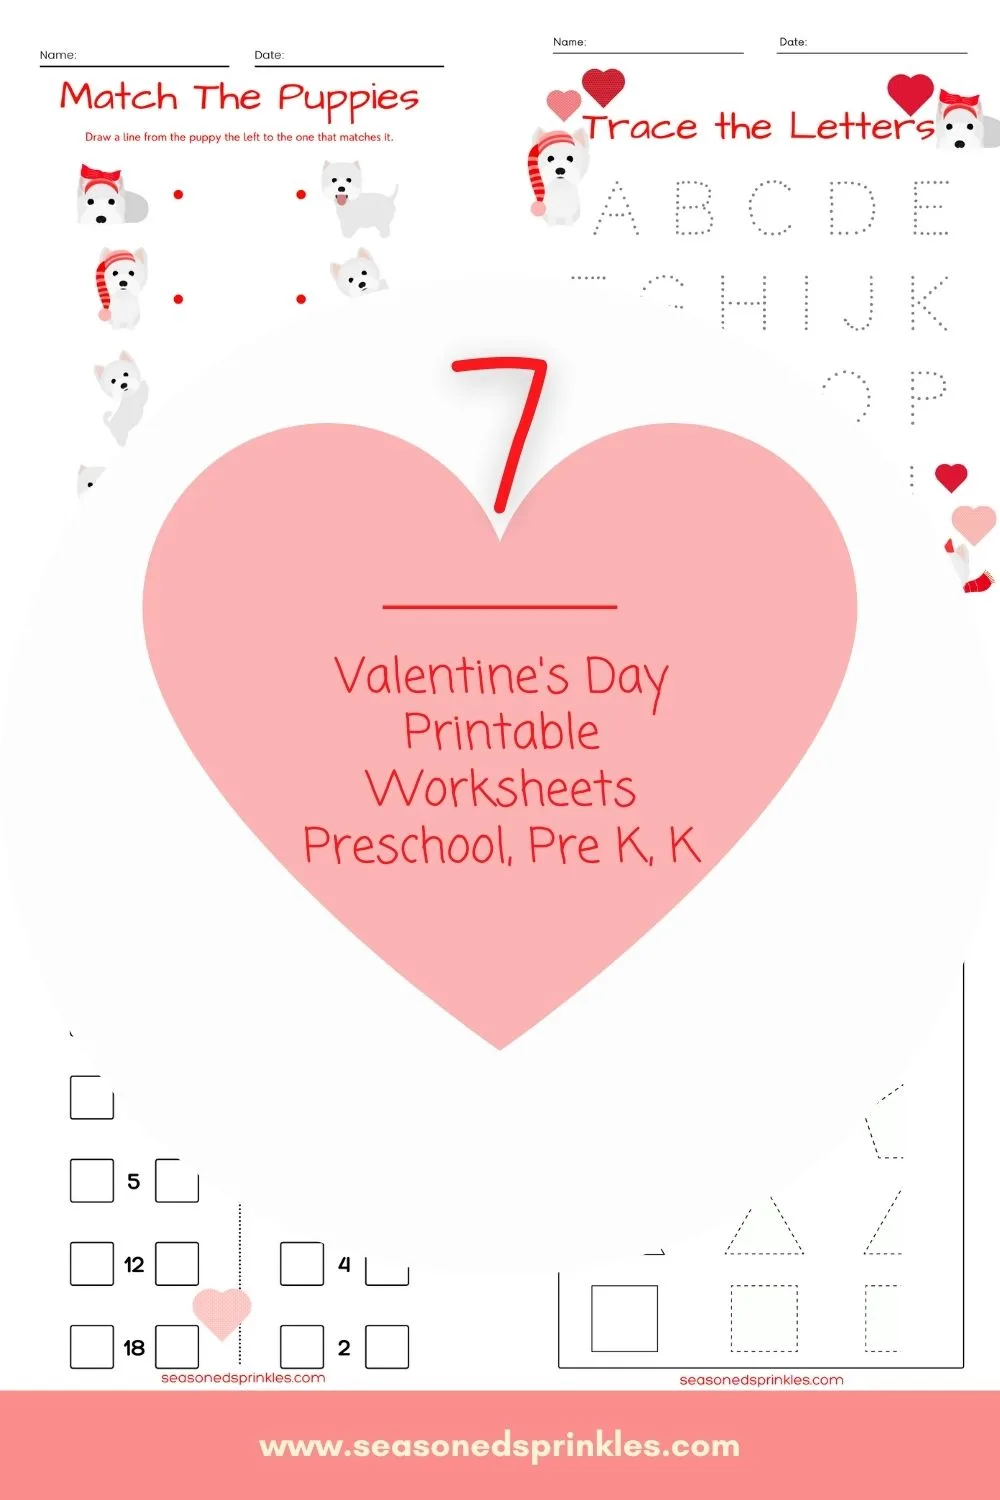 Valentine's Day puppy printables for kindergarten